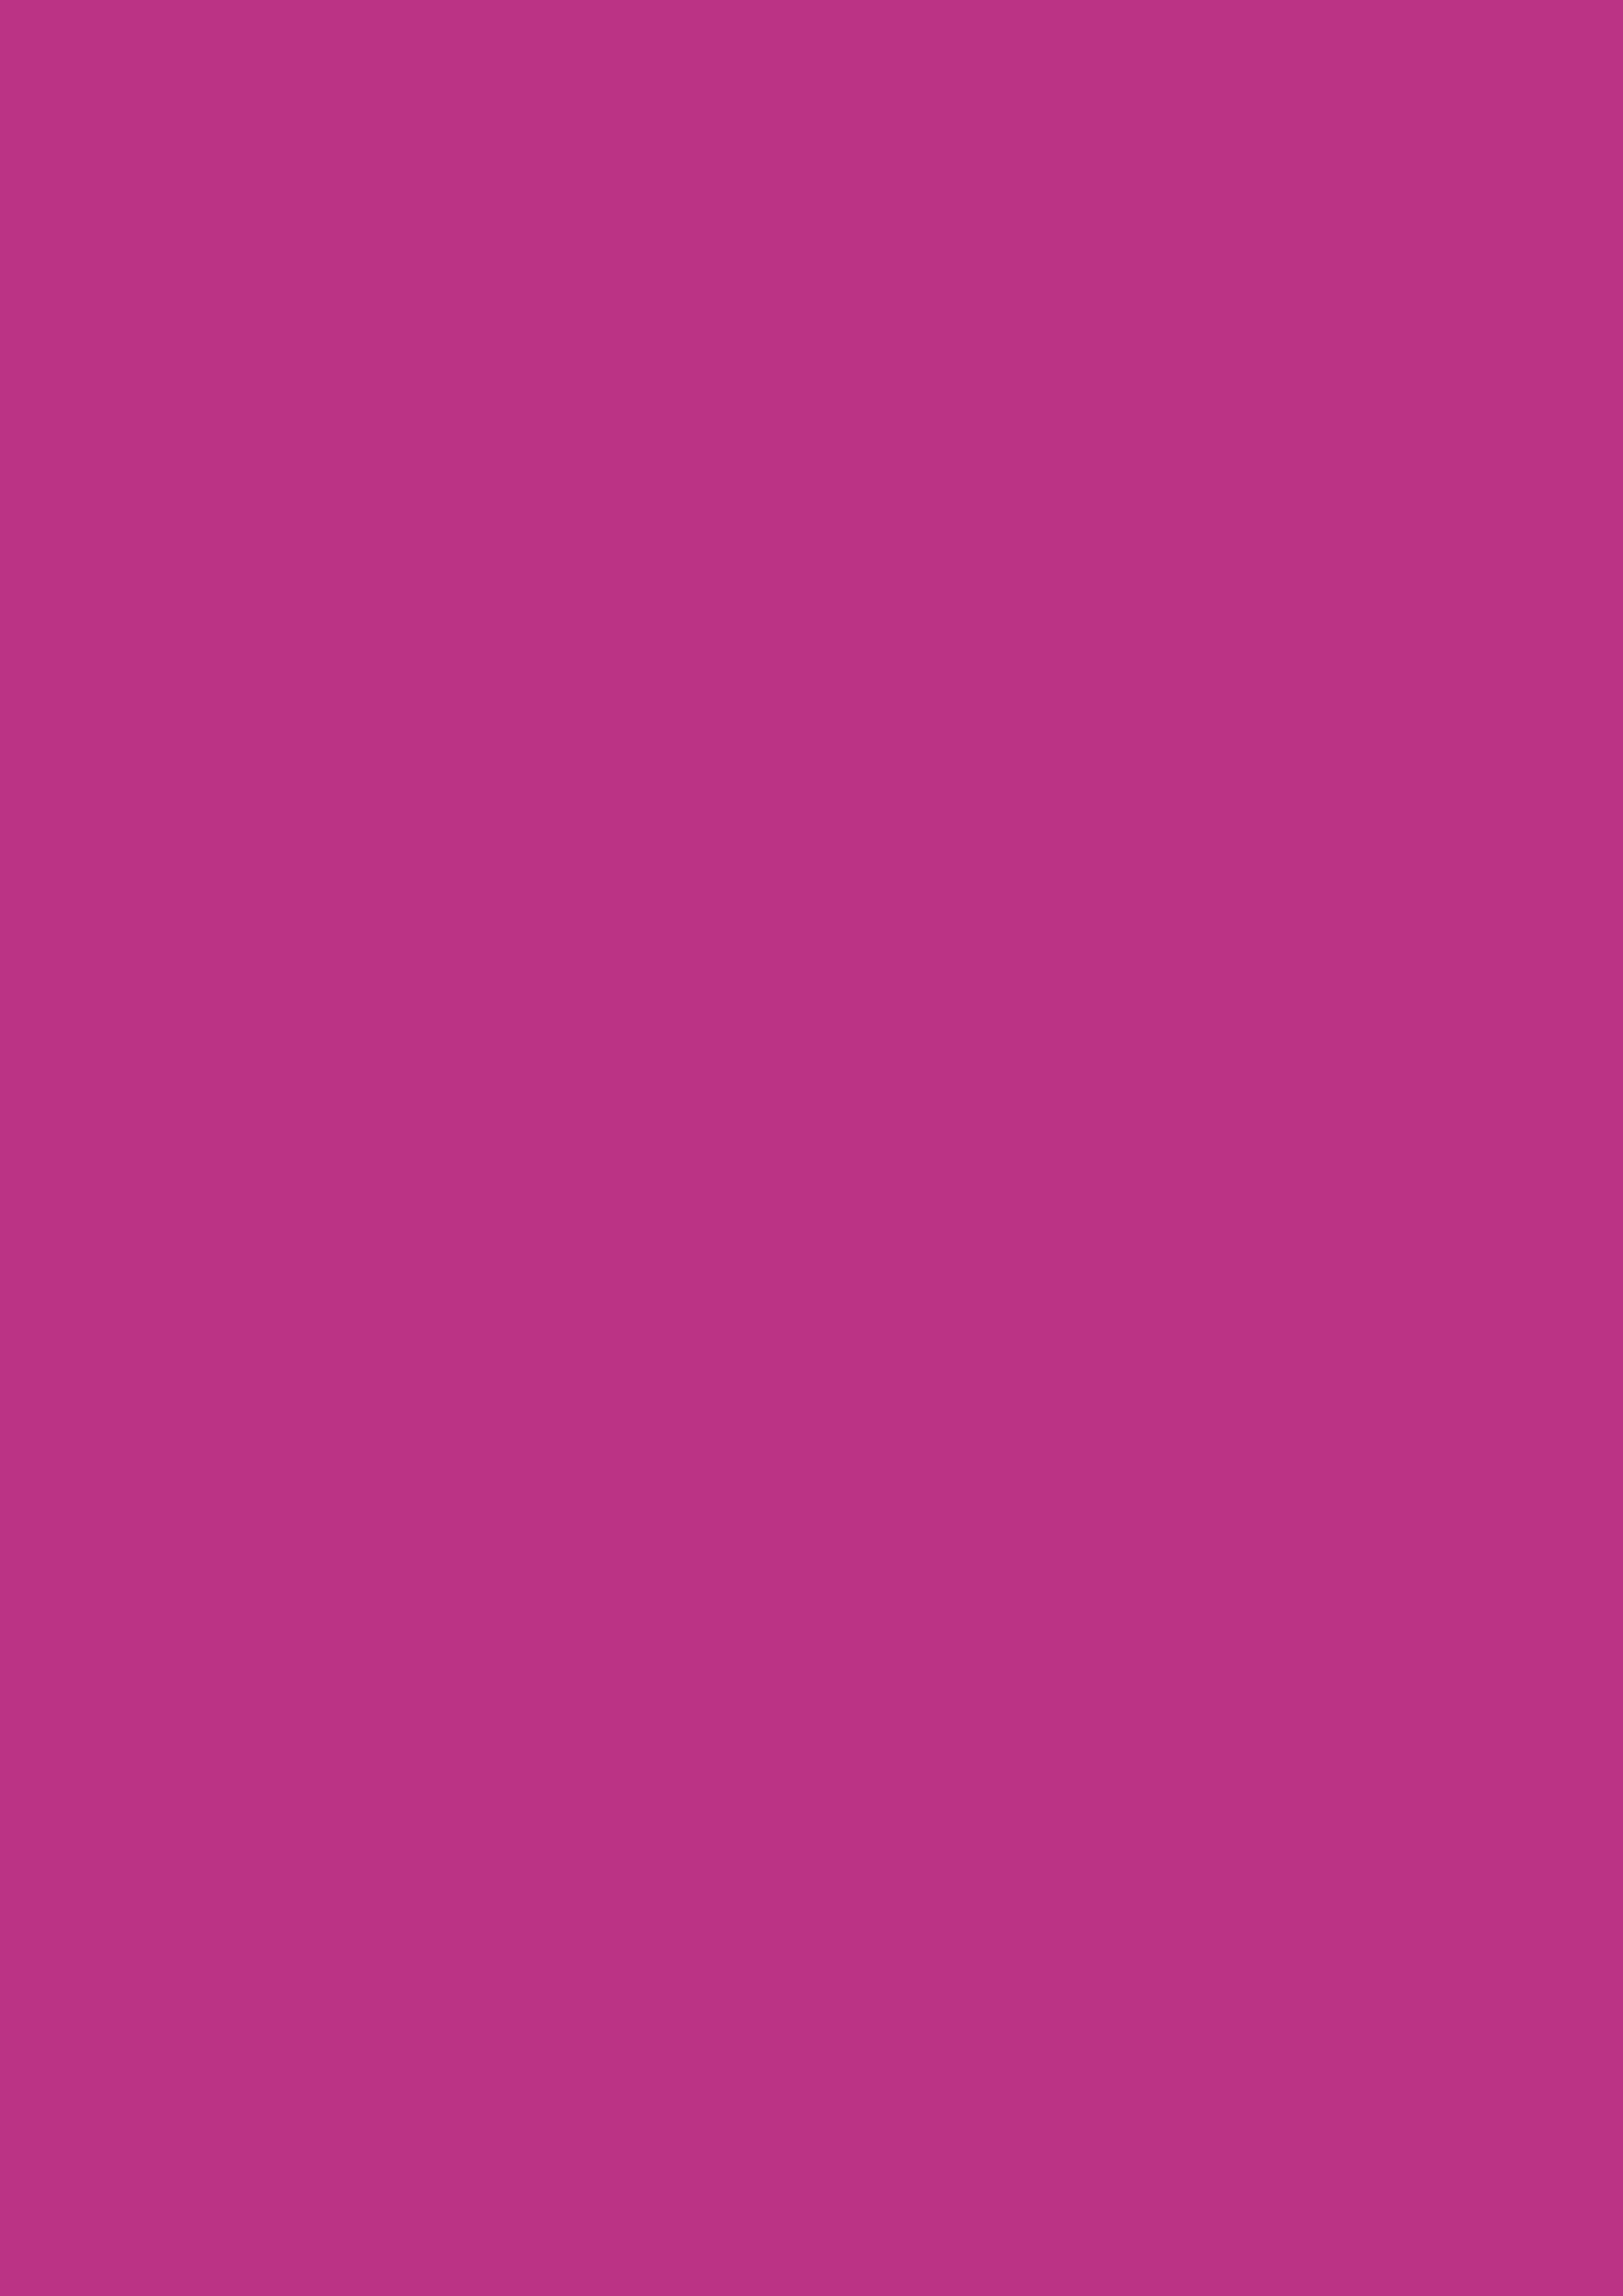 2480x3508 Medium Red-violet Solid Color Background